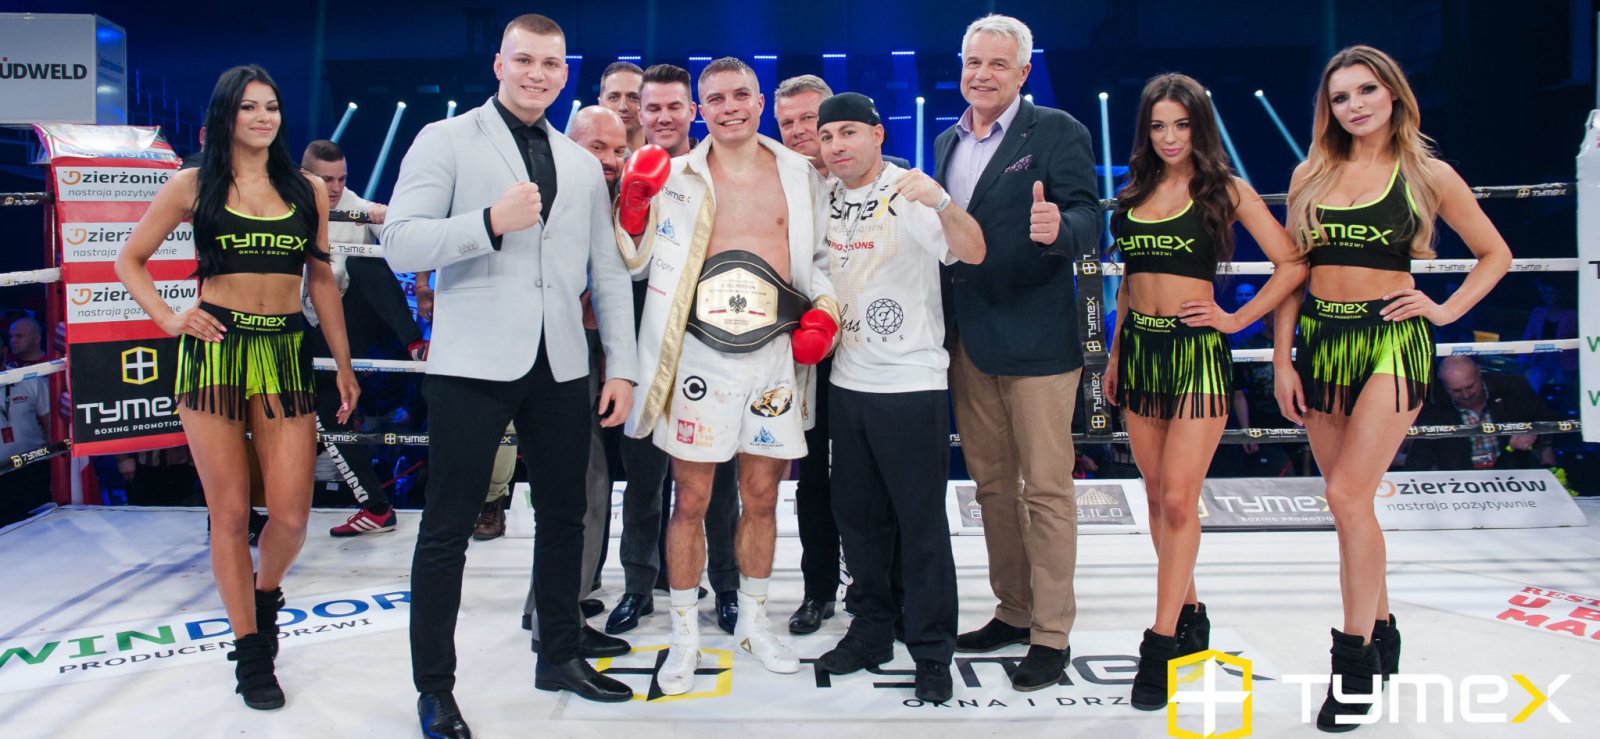 Grupa kobiet i mężczyzn na ringu bokserskim, pośrodku usmiechnięty zawodnik